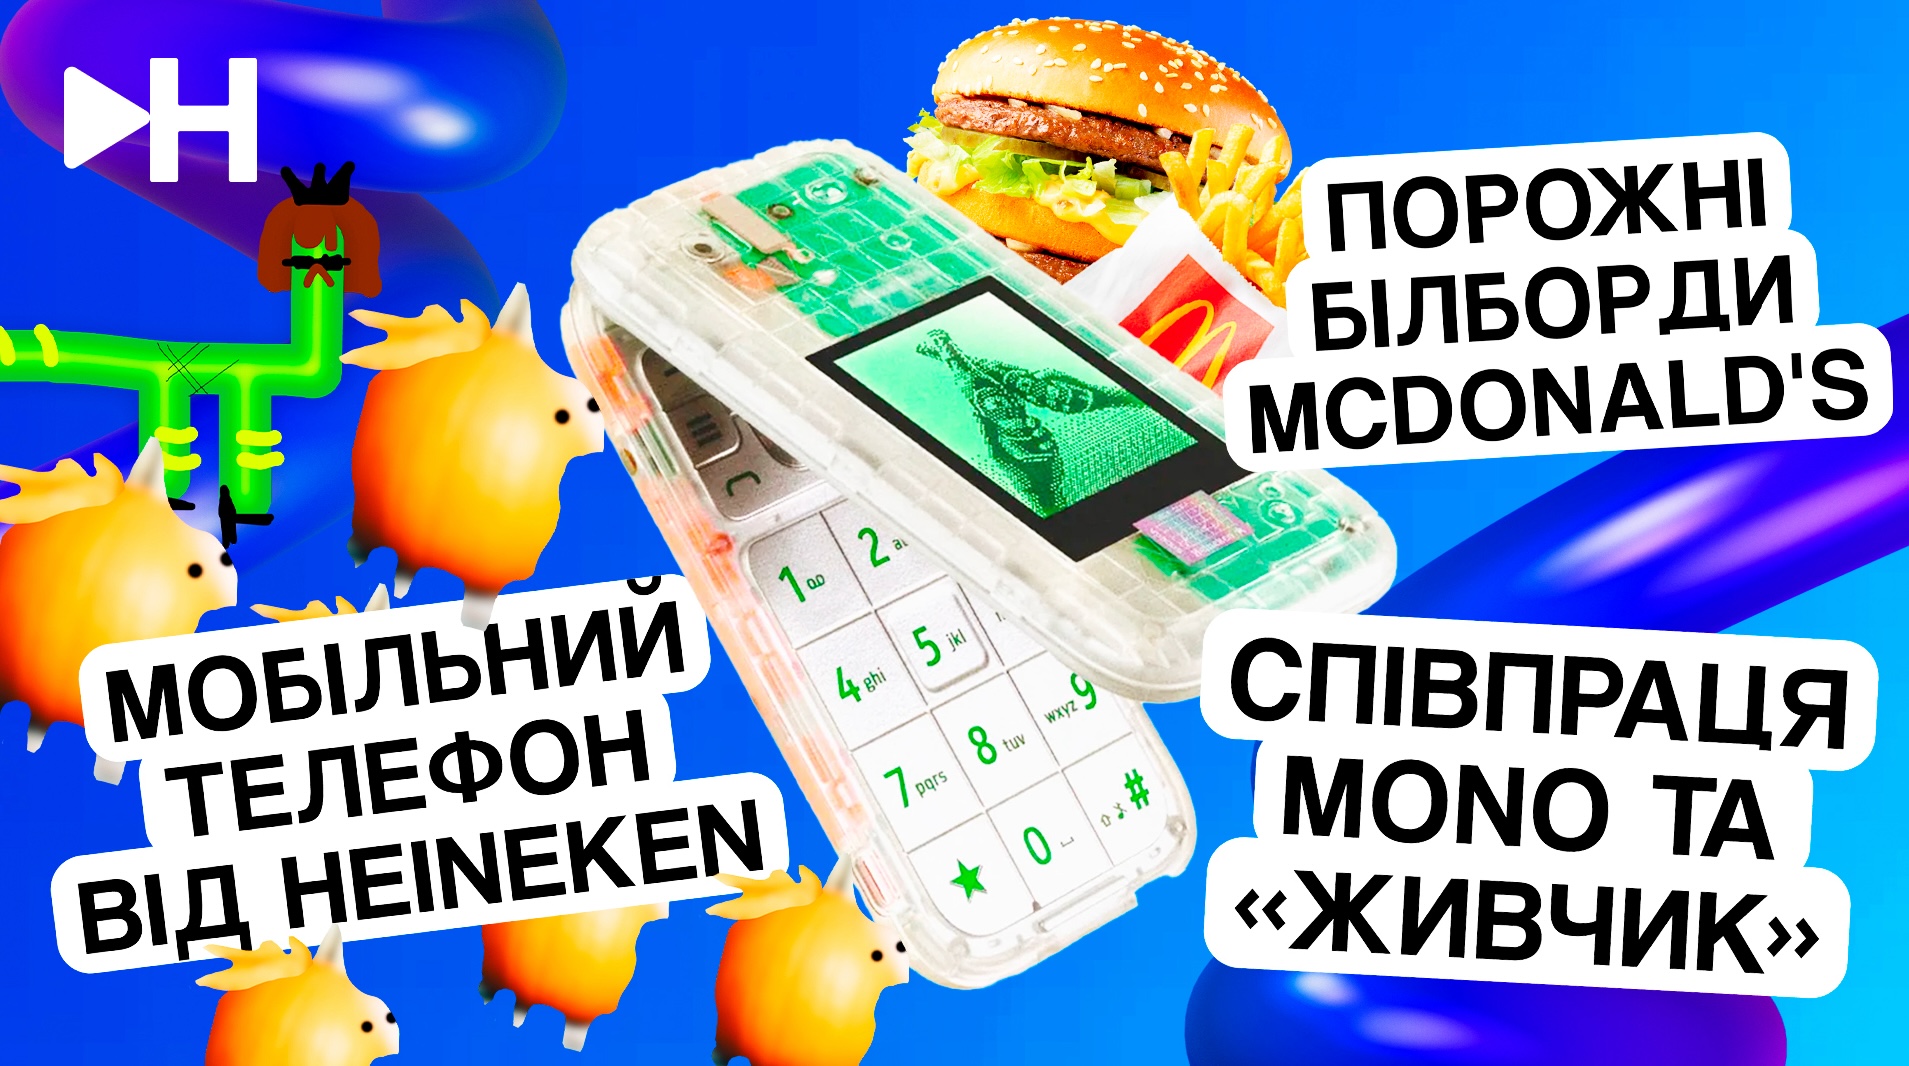 🎙️ Співпраця Monobank та «Живчик», реклама McDonald’s та телефон від Heineken: дивіться новий випуск «Креативний Новинар»